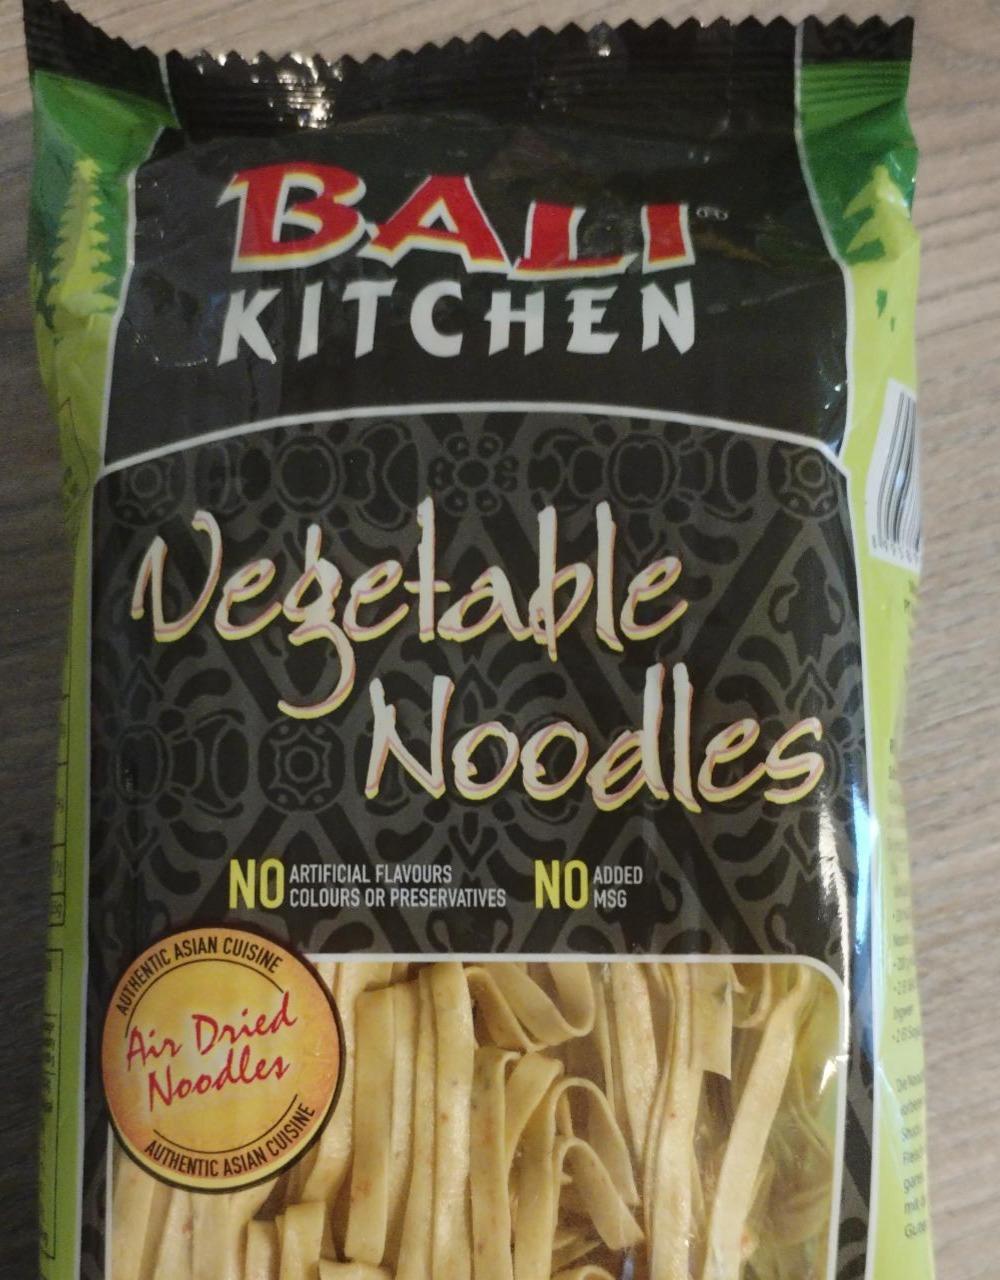 Fotografie - Vegetable Noodles Bali kitchen